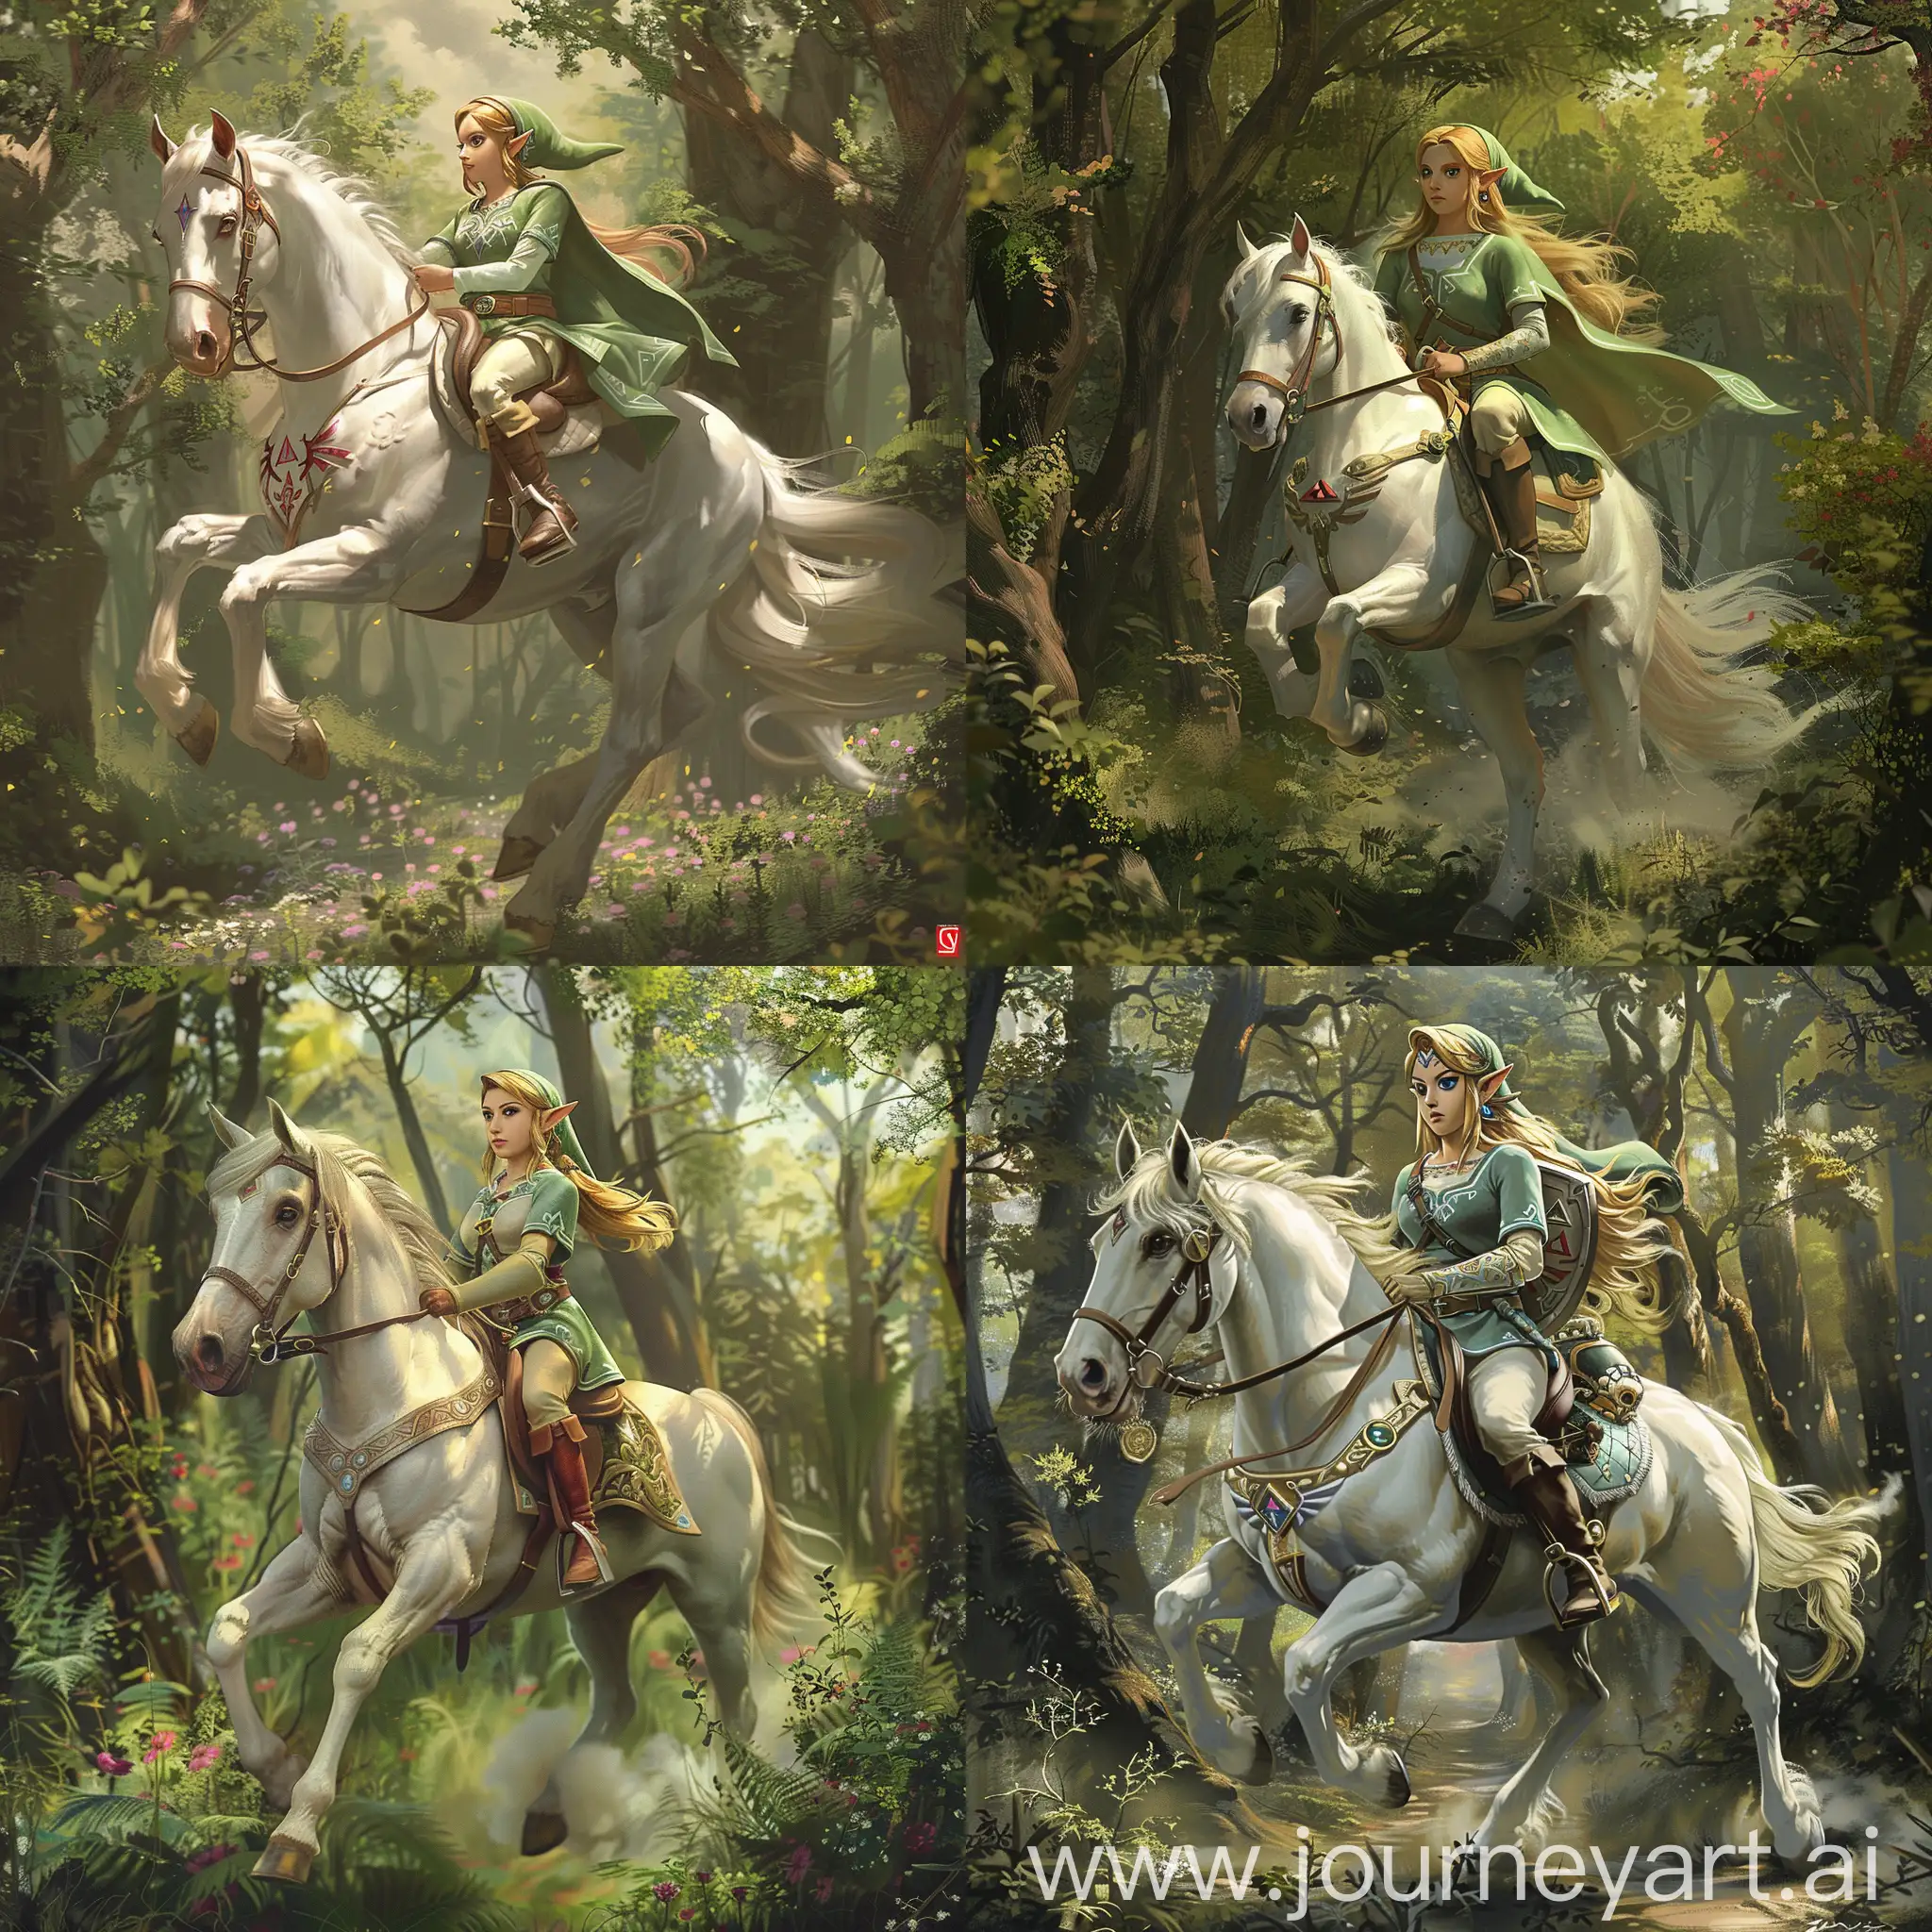 塞尔达公主骑着白马在森林中，女性，游戏，精美CG，细节丰富，油画风格